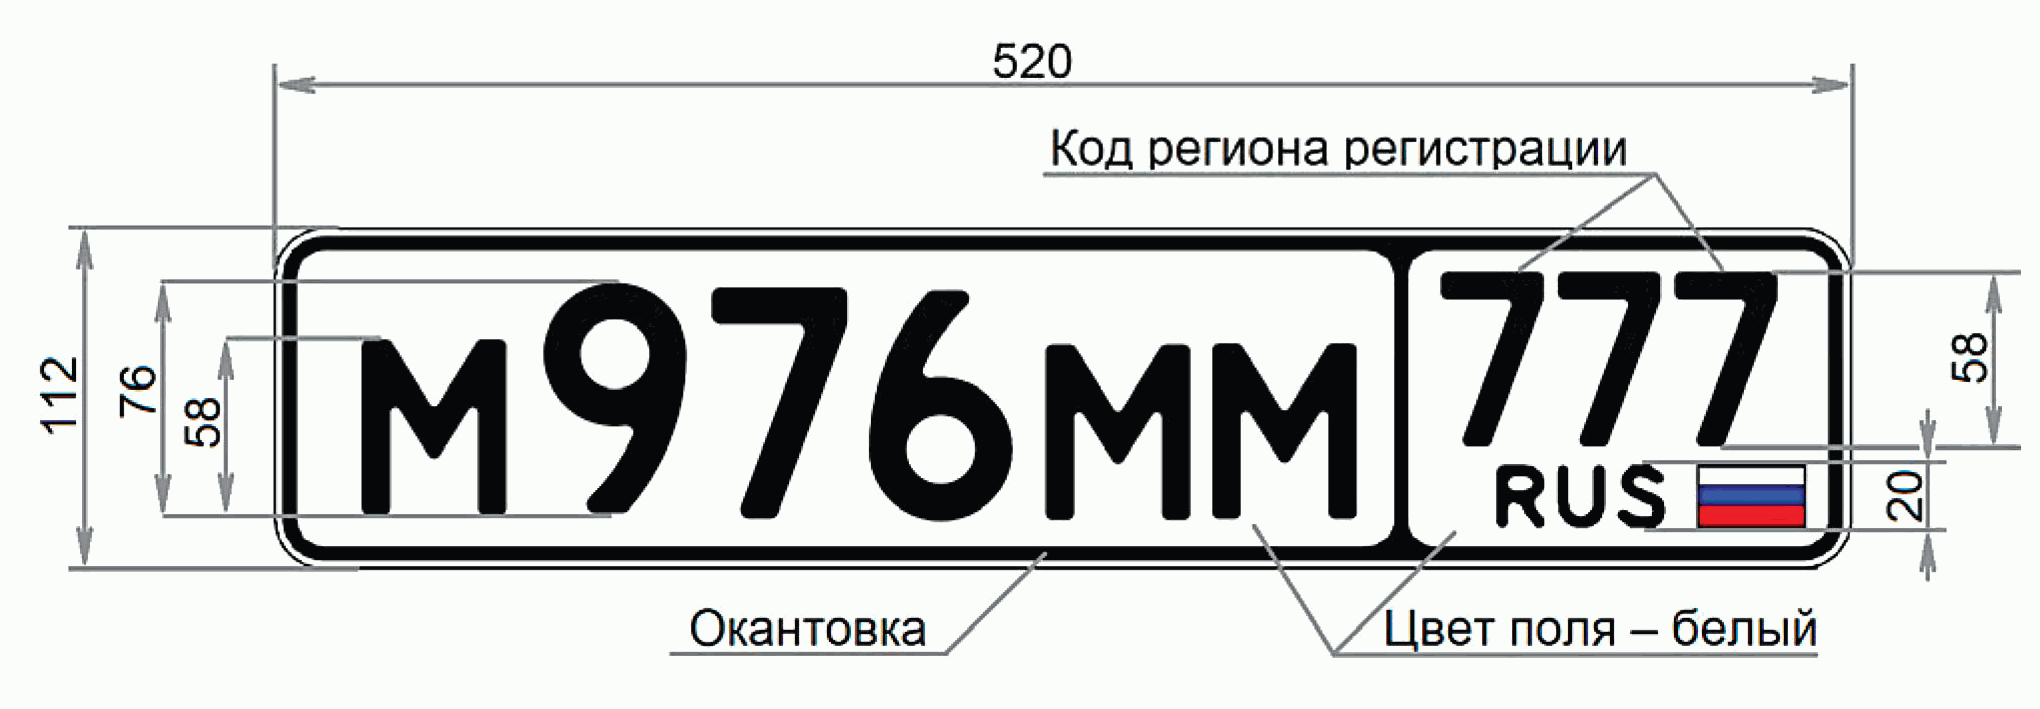 Номер1 рф. Номерной знак в652сх09. Стандарт автомобильных номеров РФ. Госномер Тип 1а Размеры. Гос рег номер автомобиля.